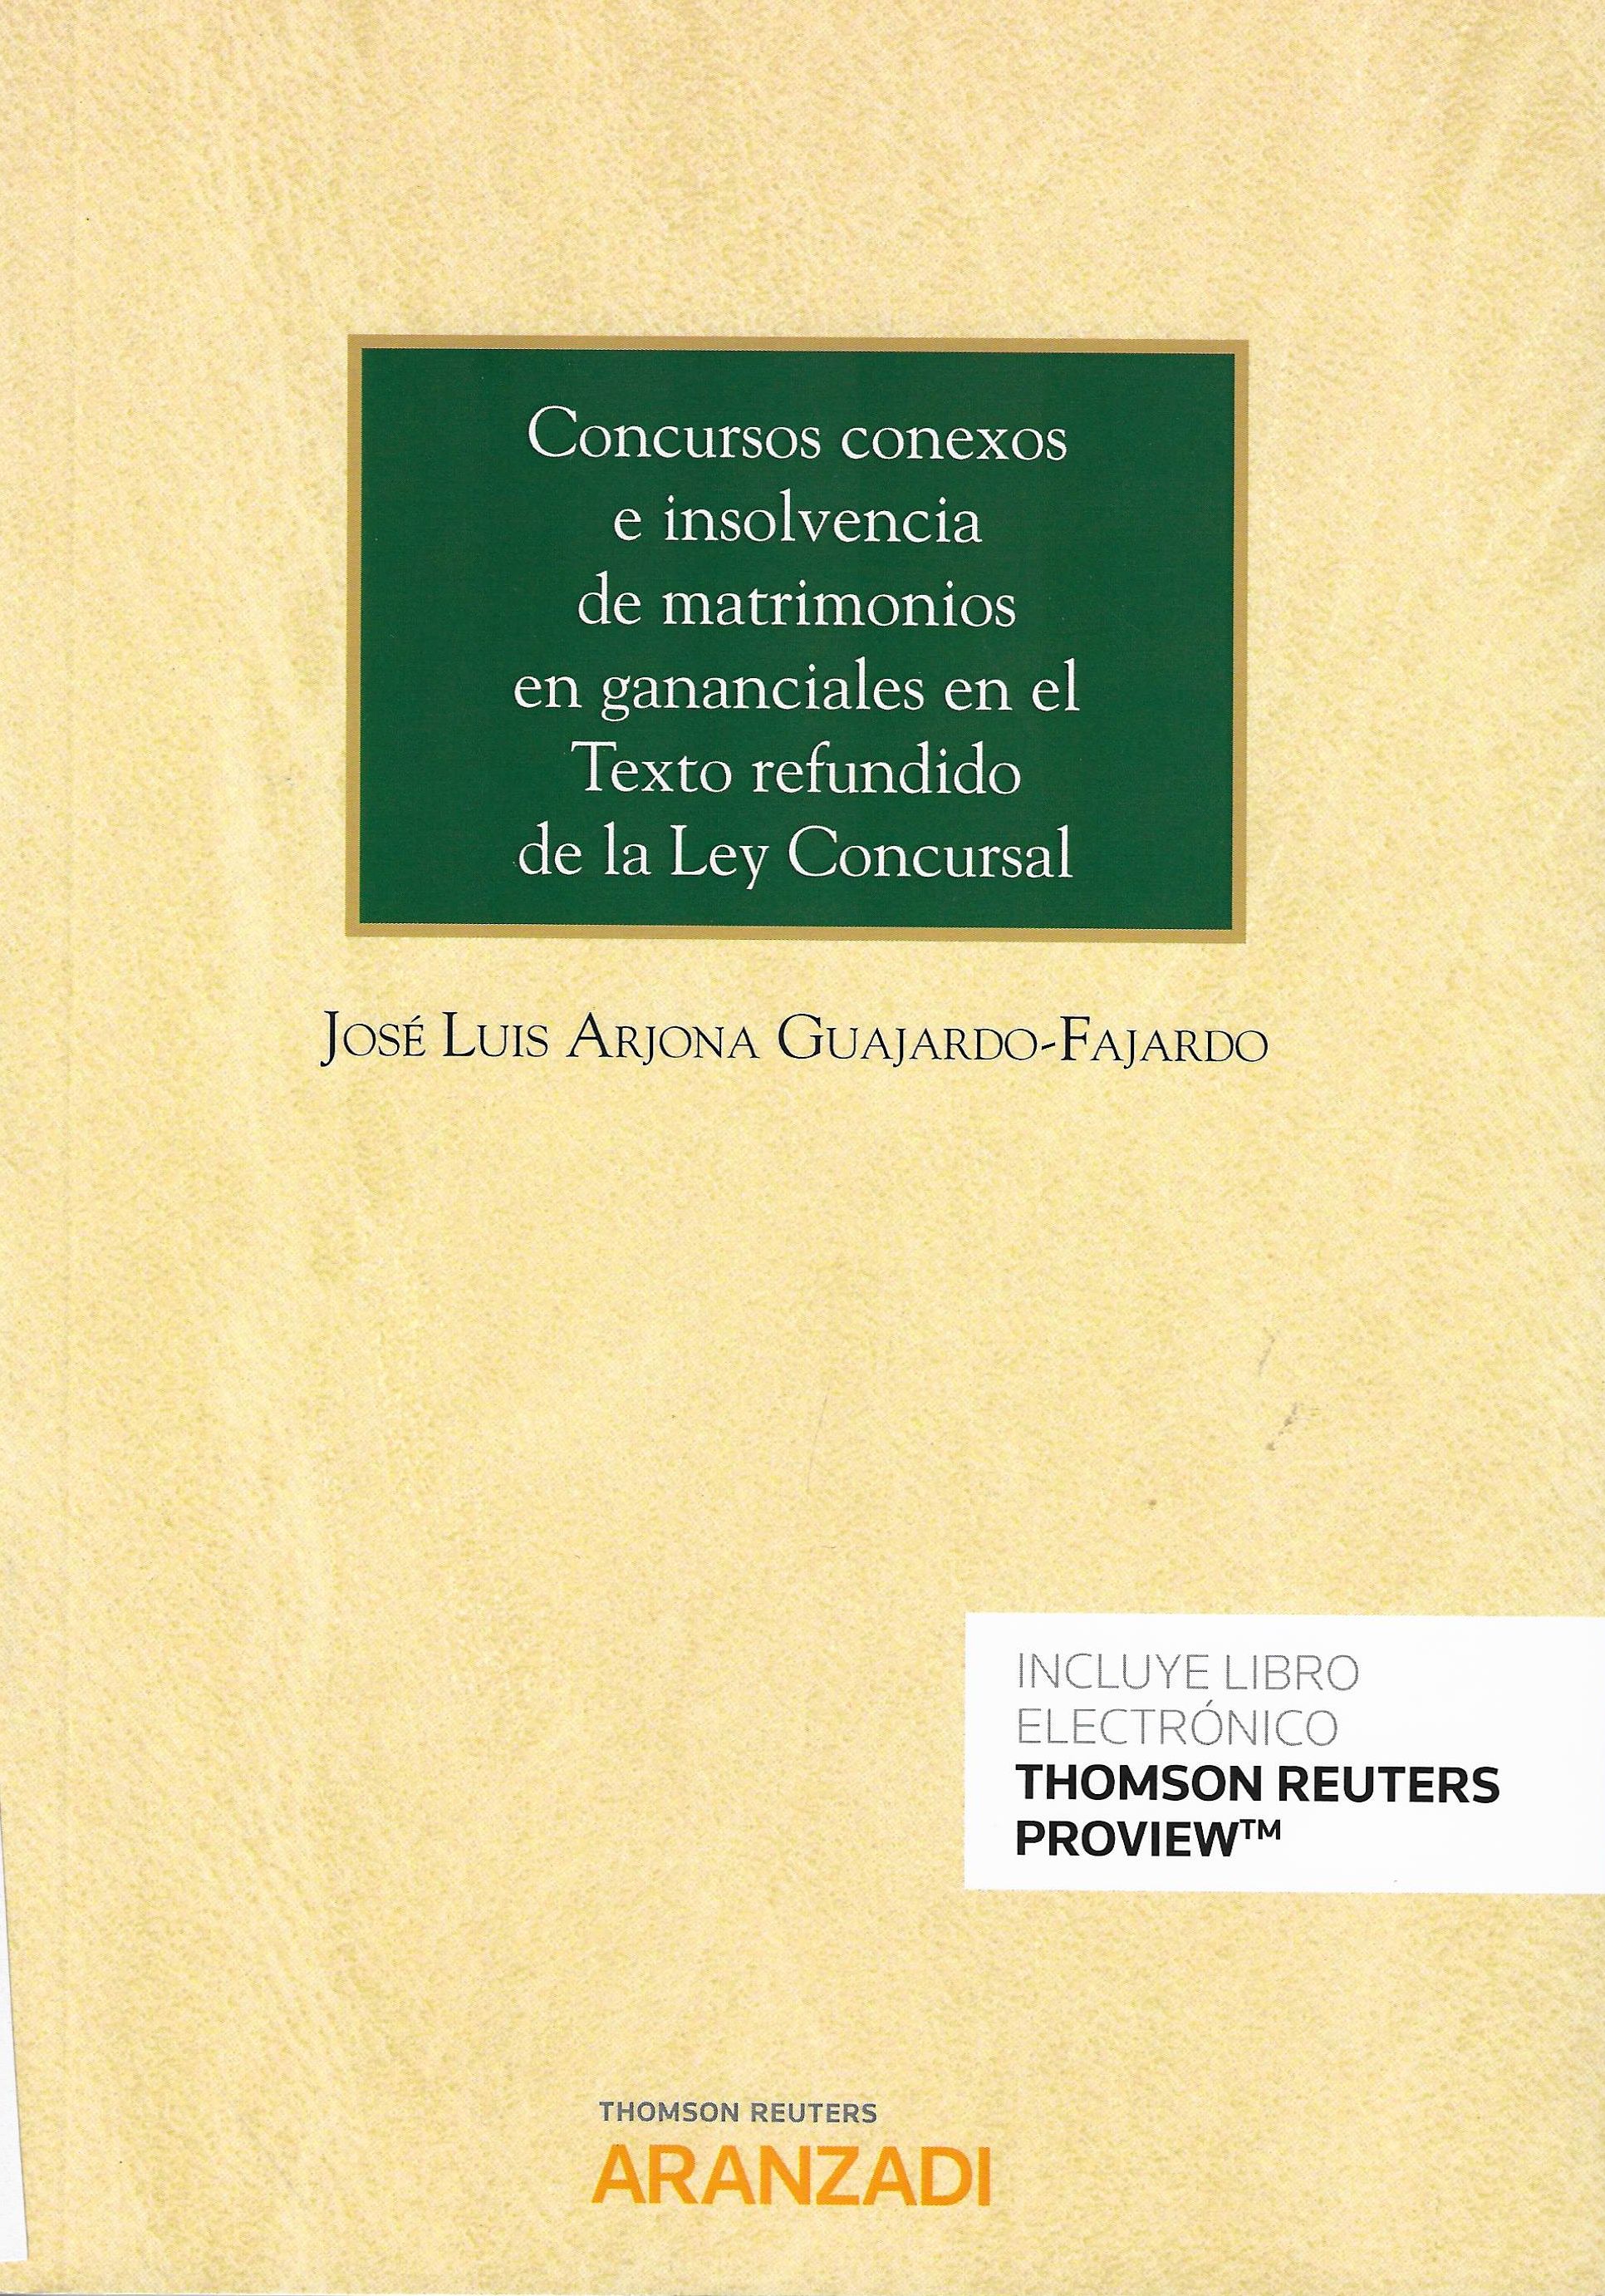 Imagen de portada del libro Concursos conexos e insolvencia de matrimonios en ganaciales en el texto refundido de la Ley concursal